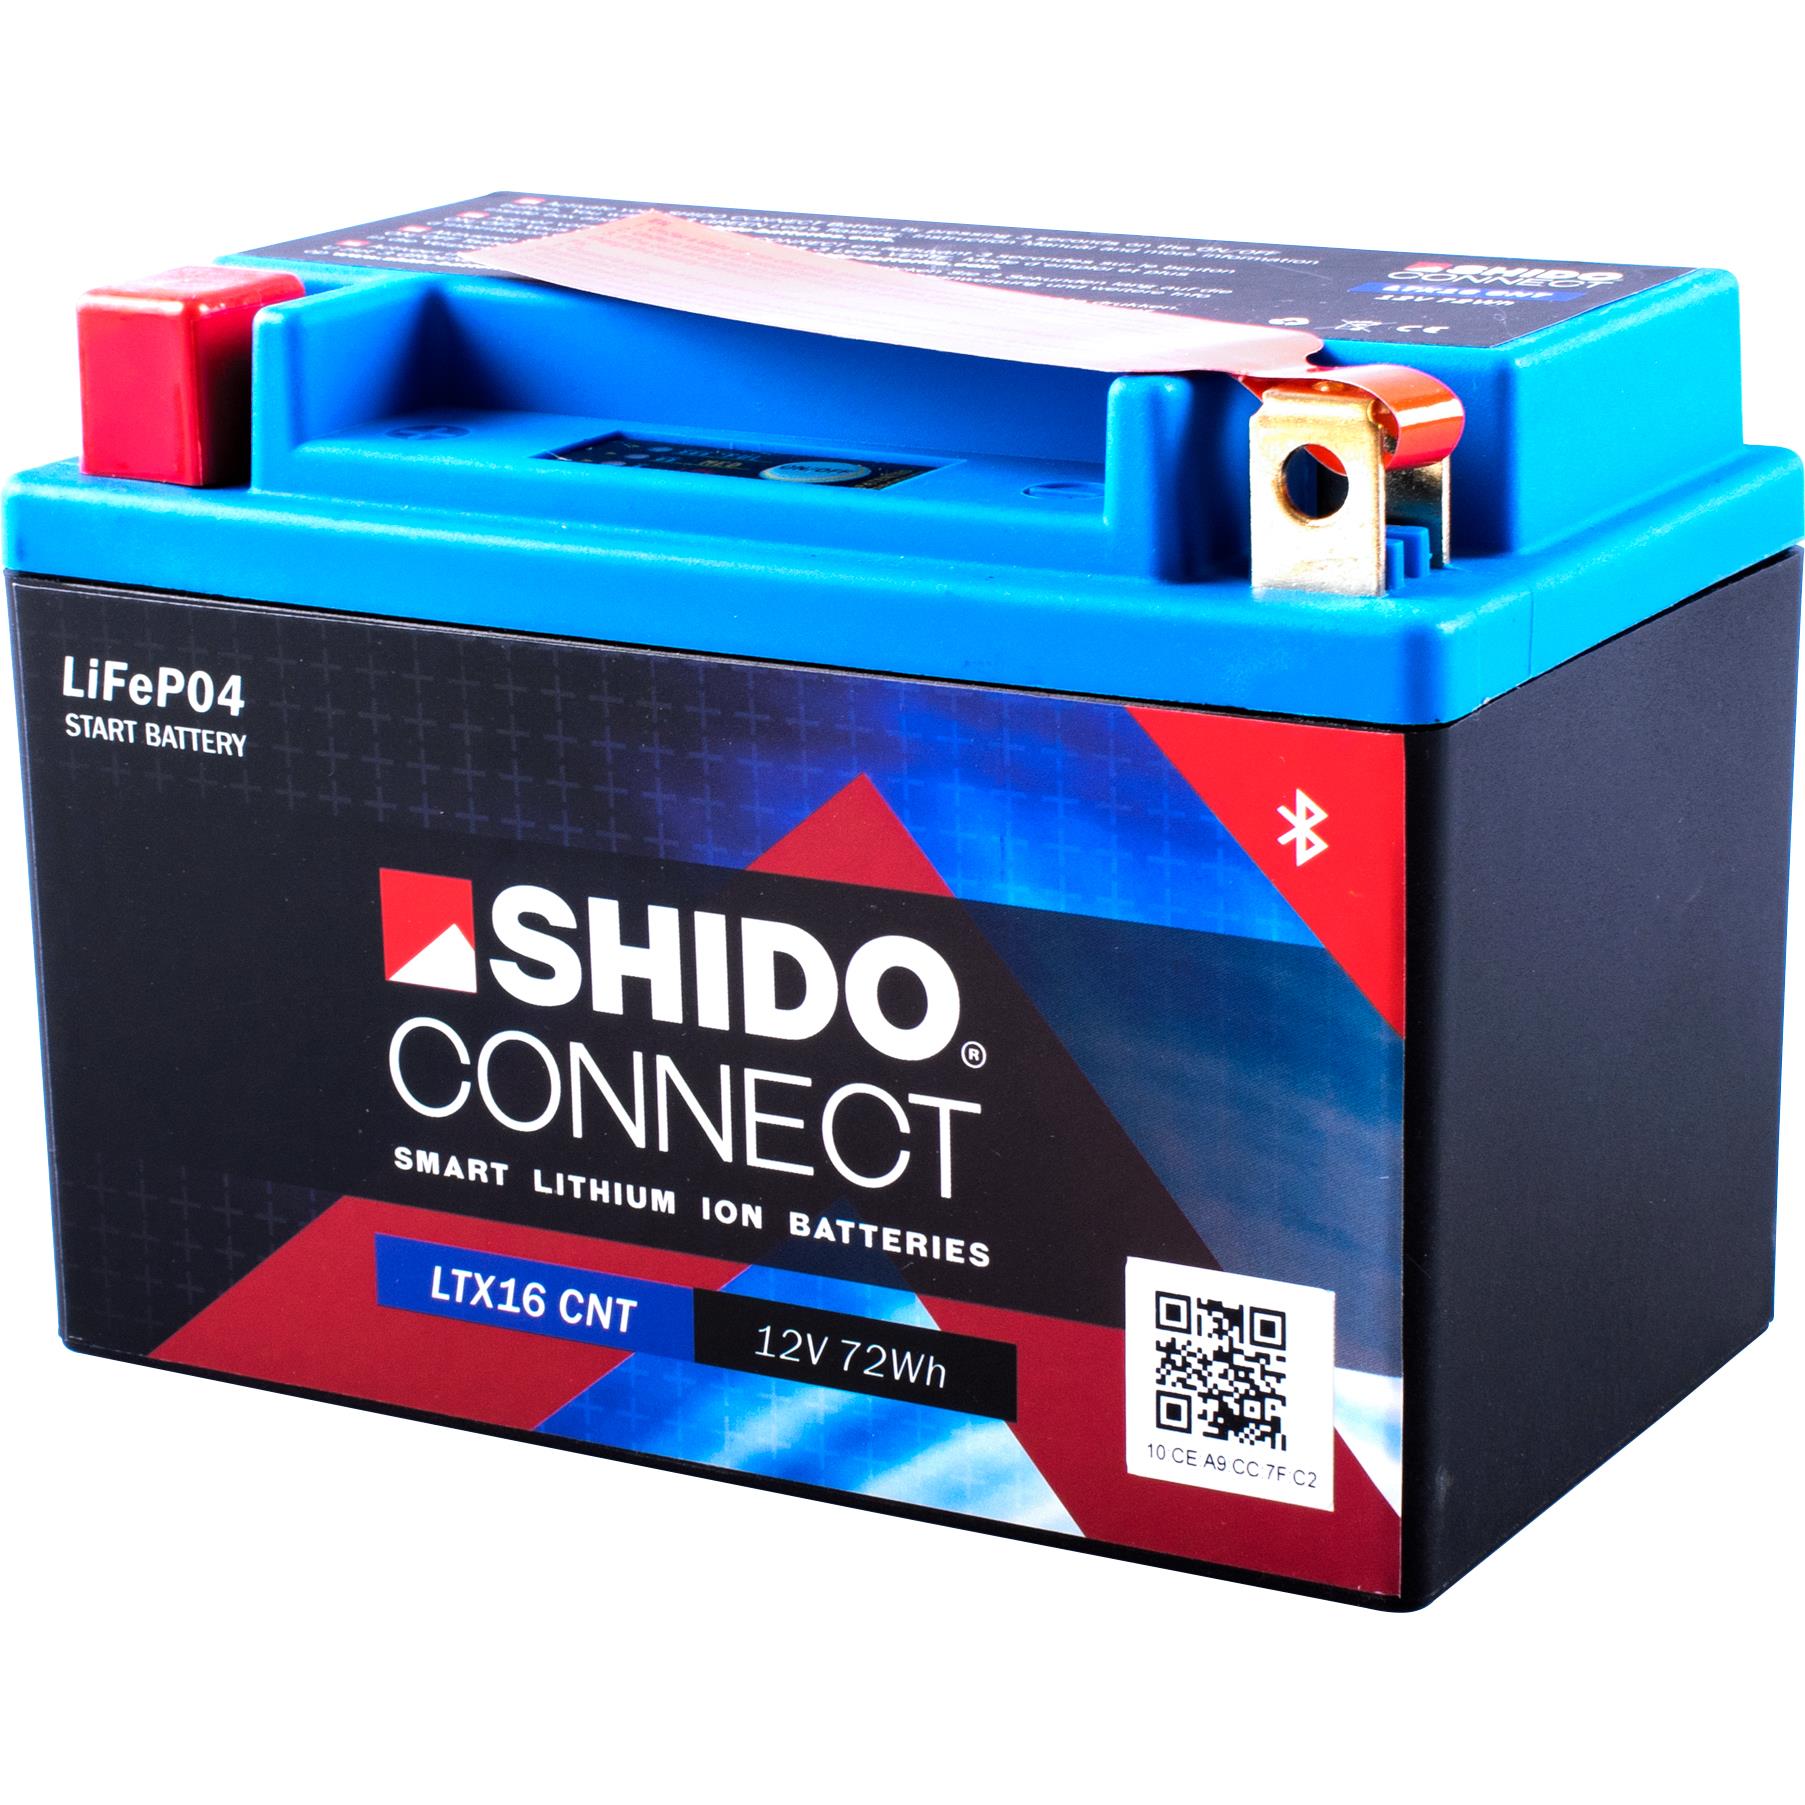 SHIDO LTX9-BS LION -S- Batterie Moto Lithium Ion